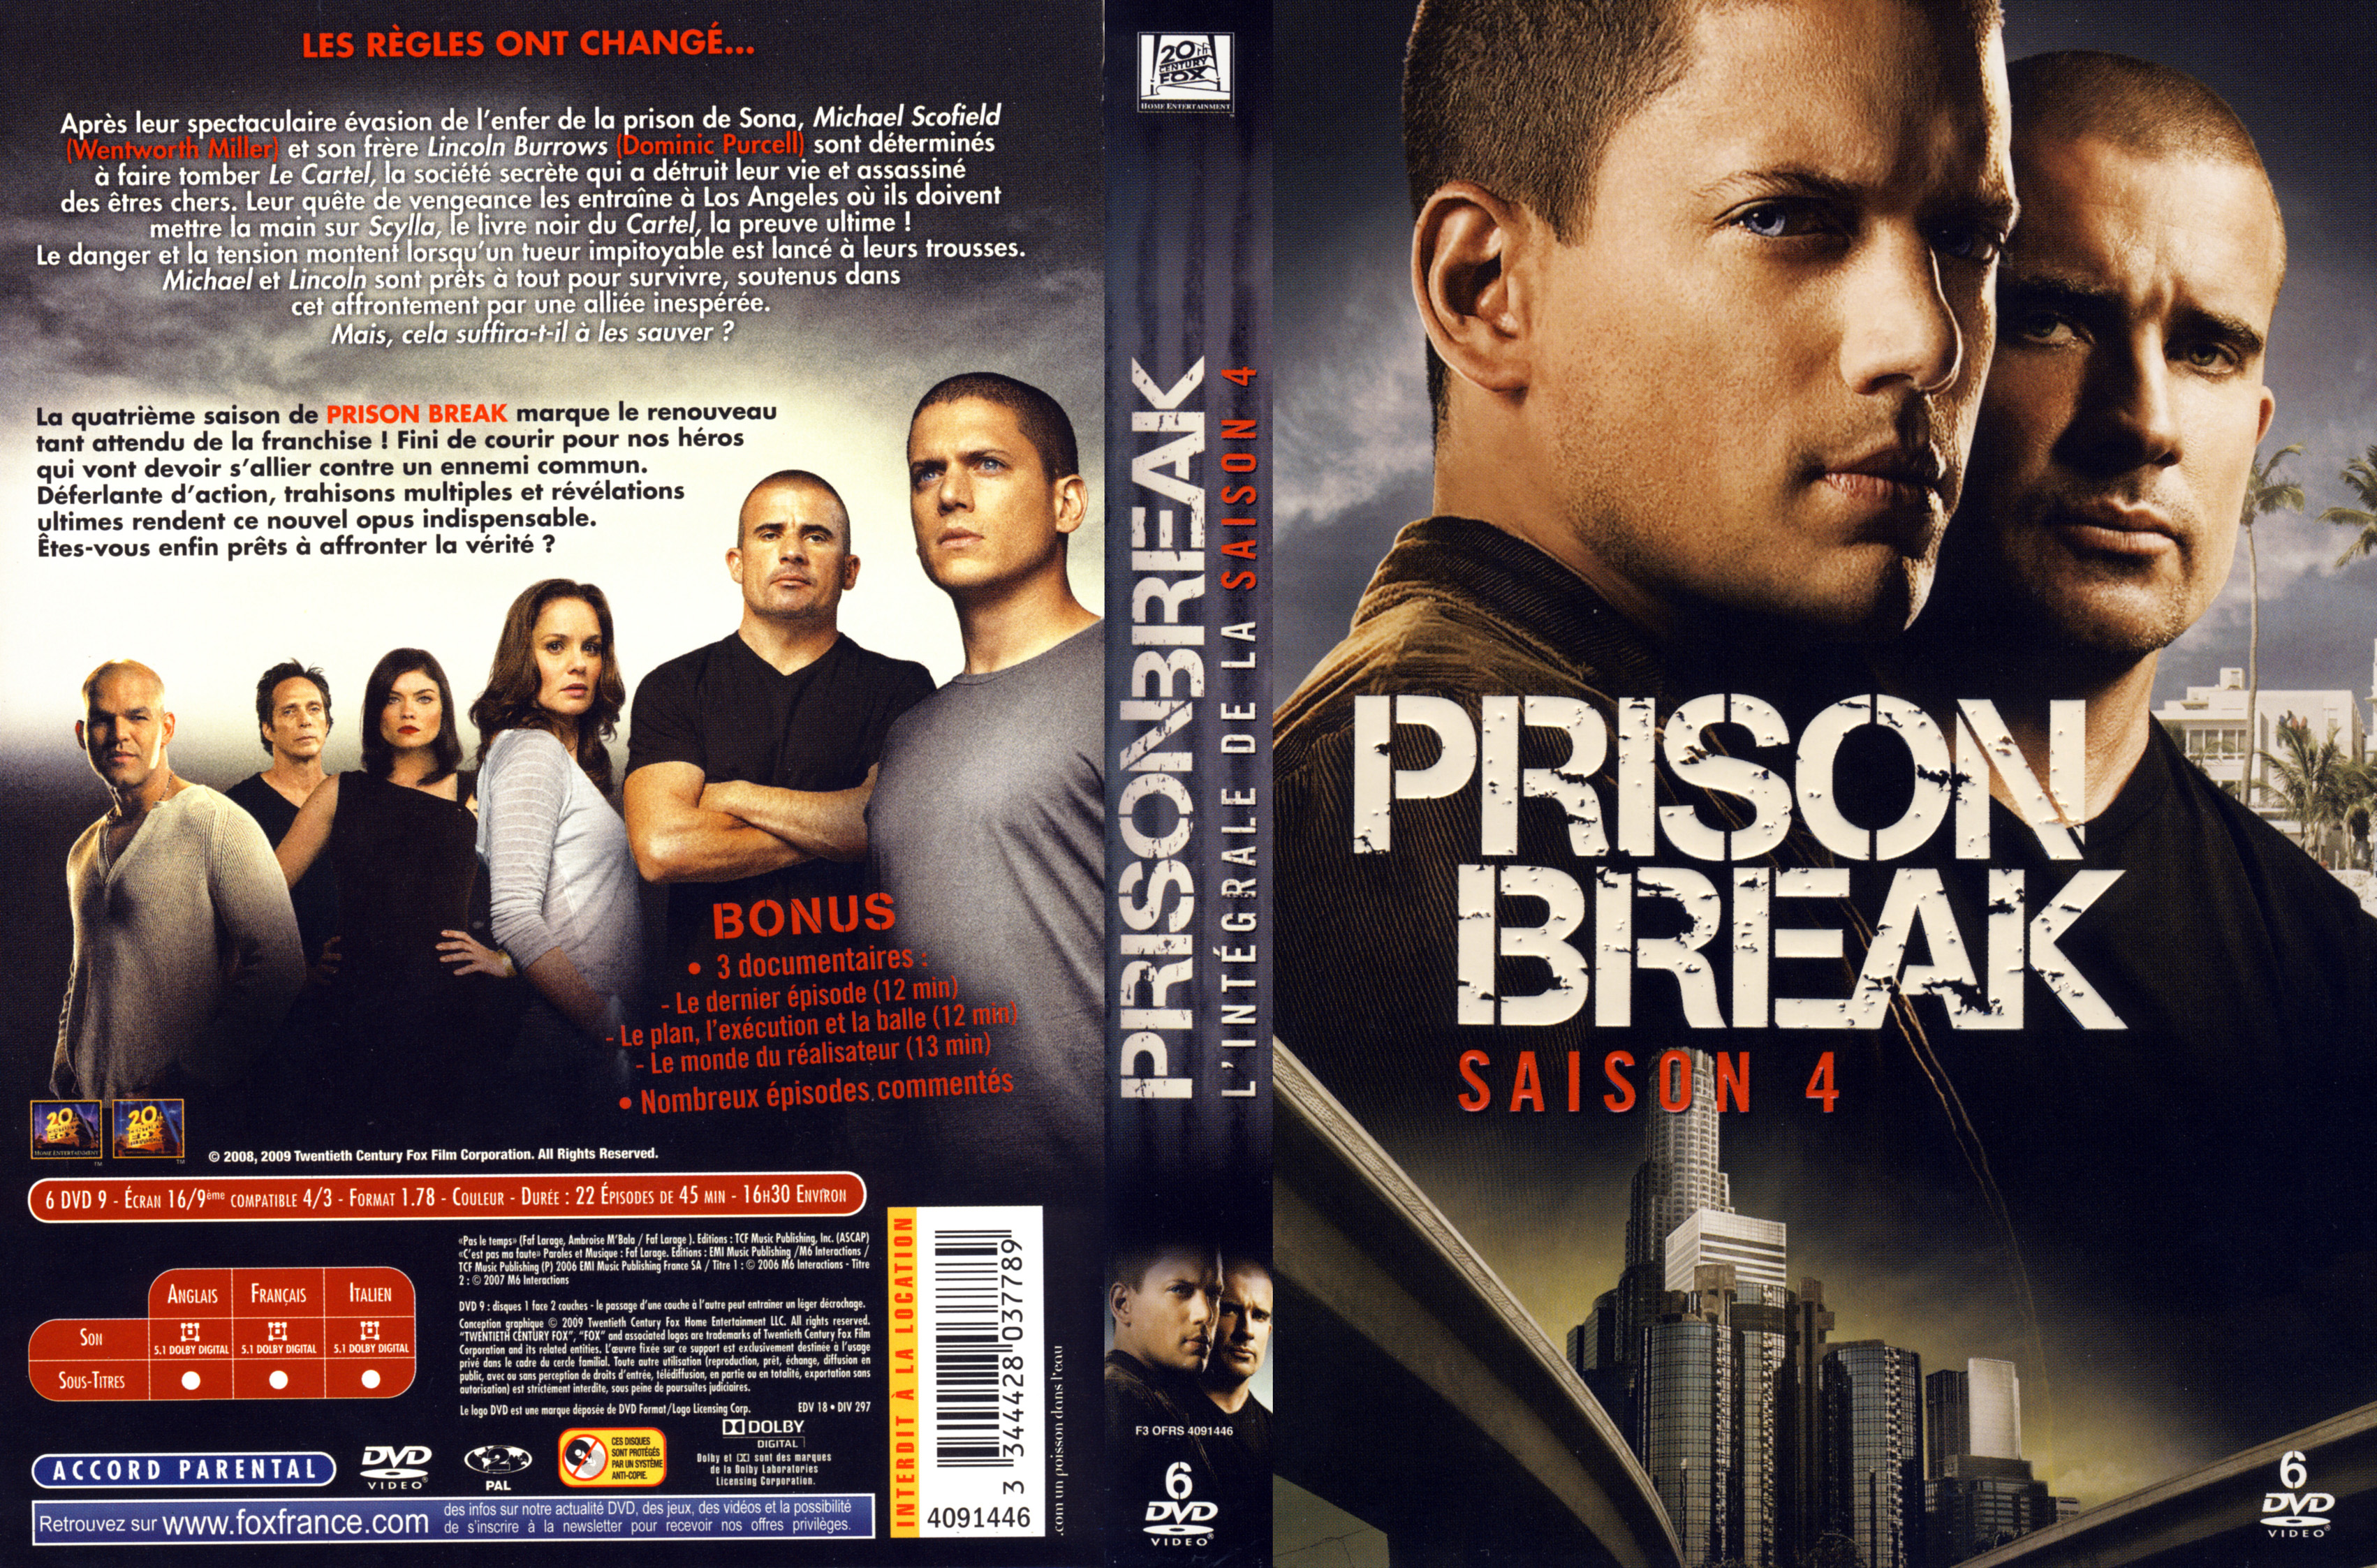 Jaquette DVD Prison break Saison 4 COFFRET